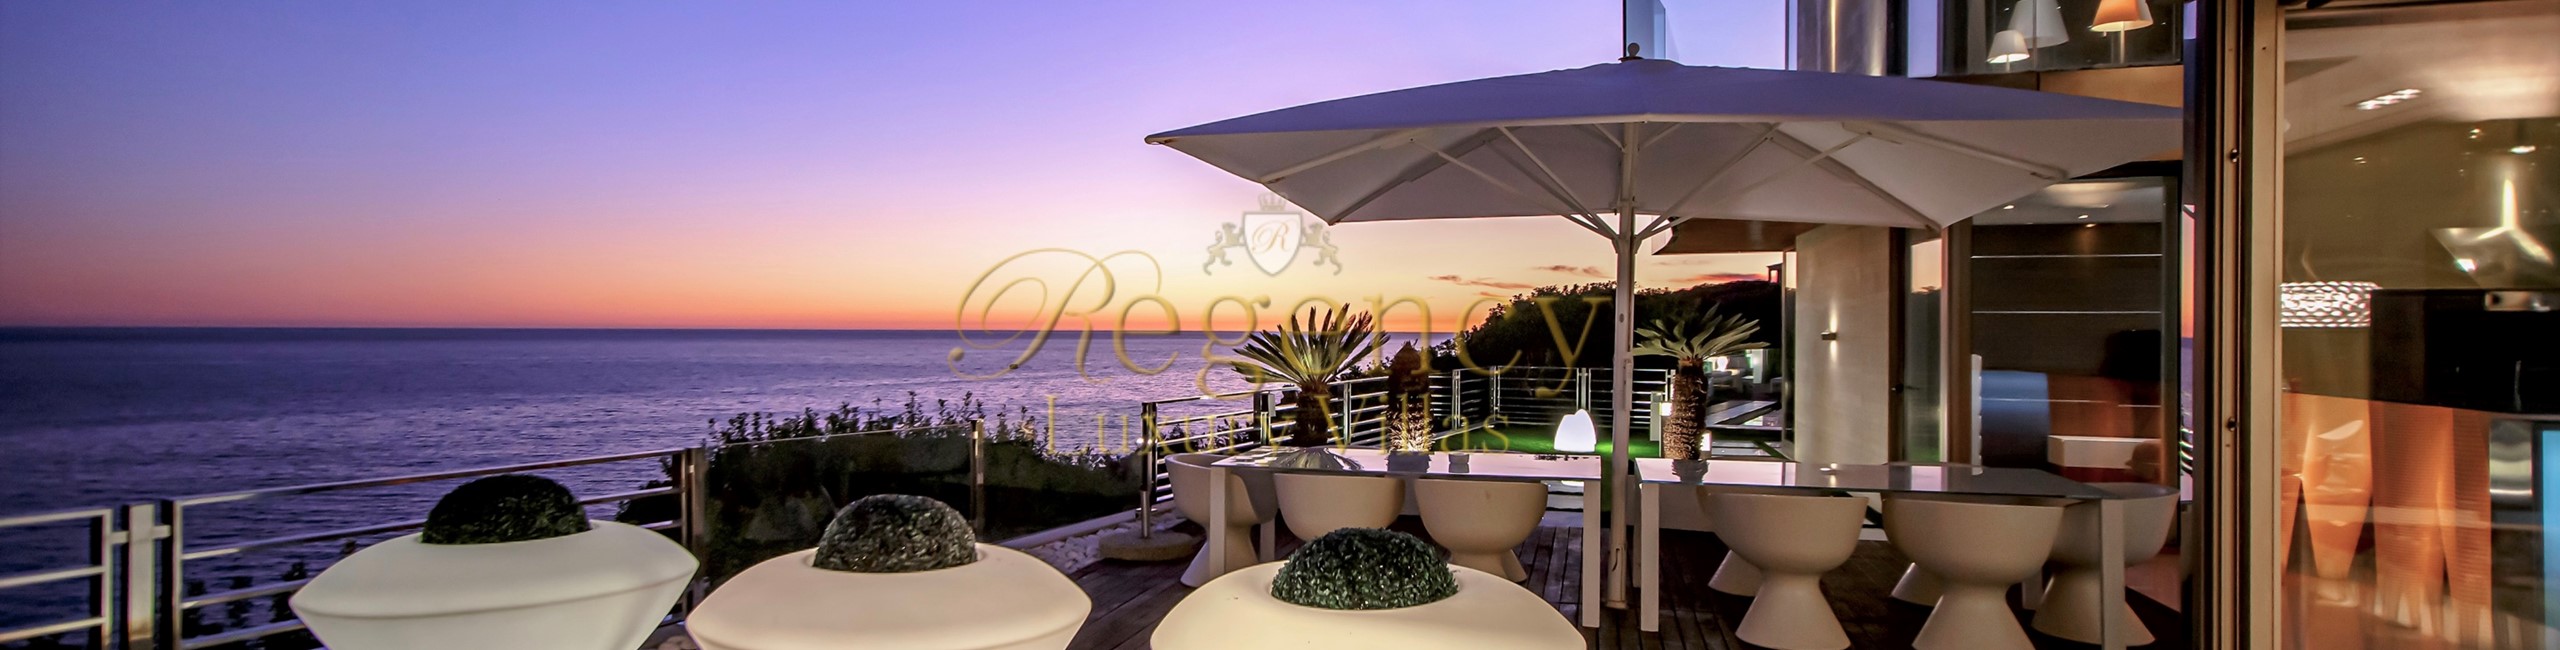 Algarve Property To Rent